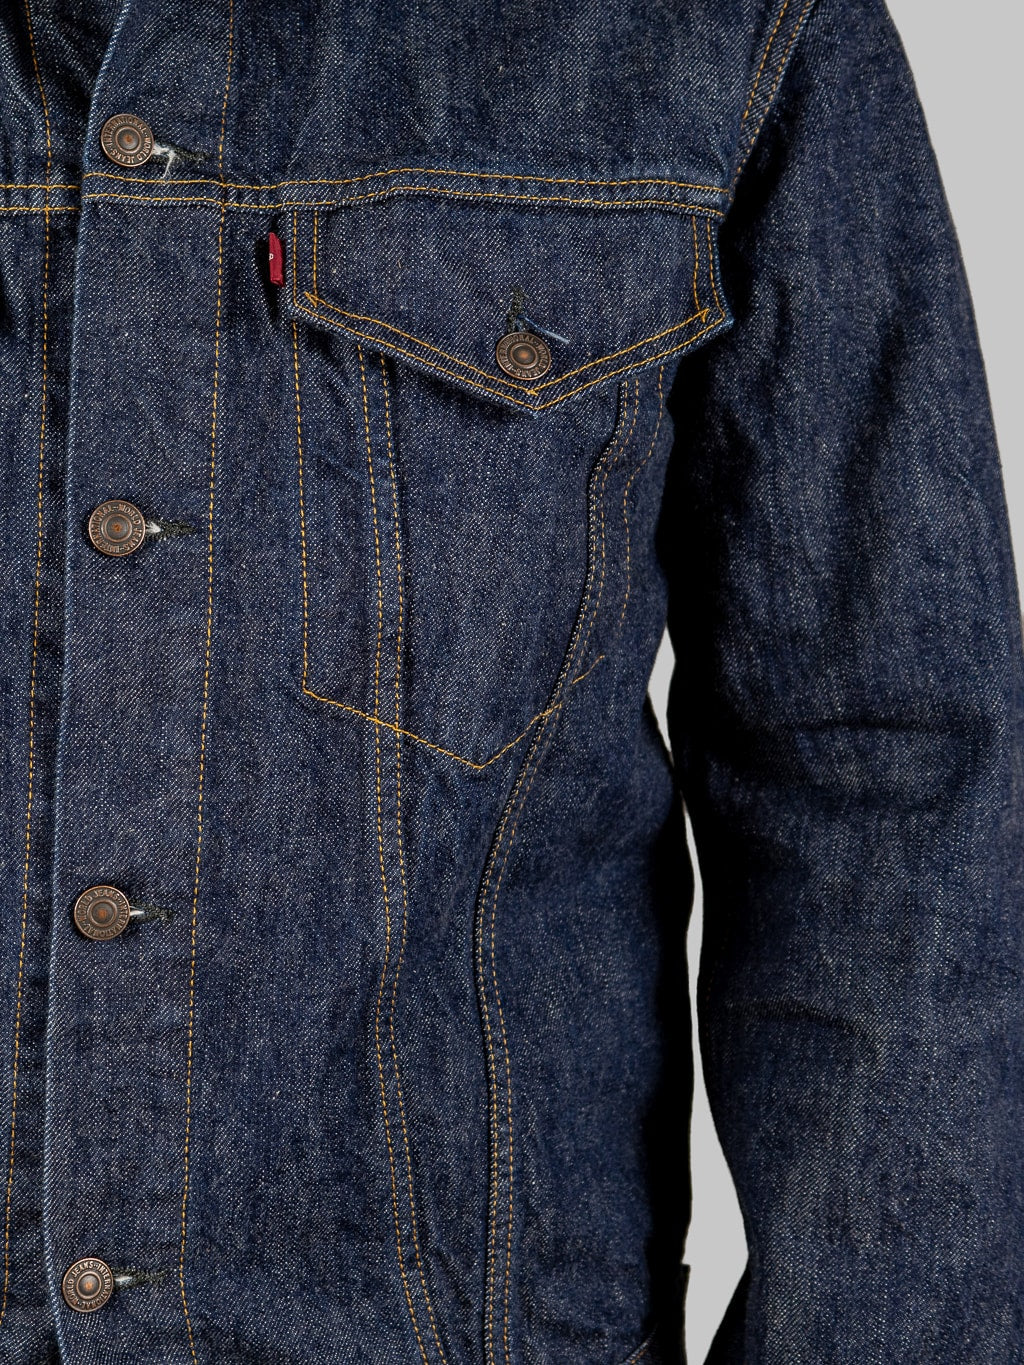 tcb jeans 60s type 3 denim jacket 100 cotton